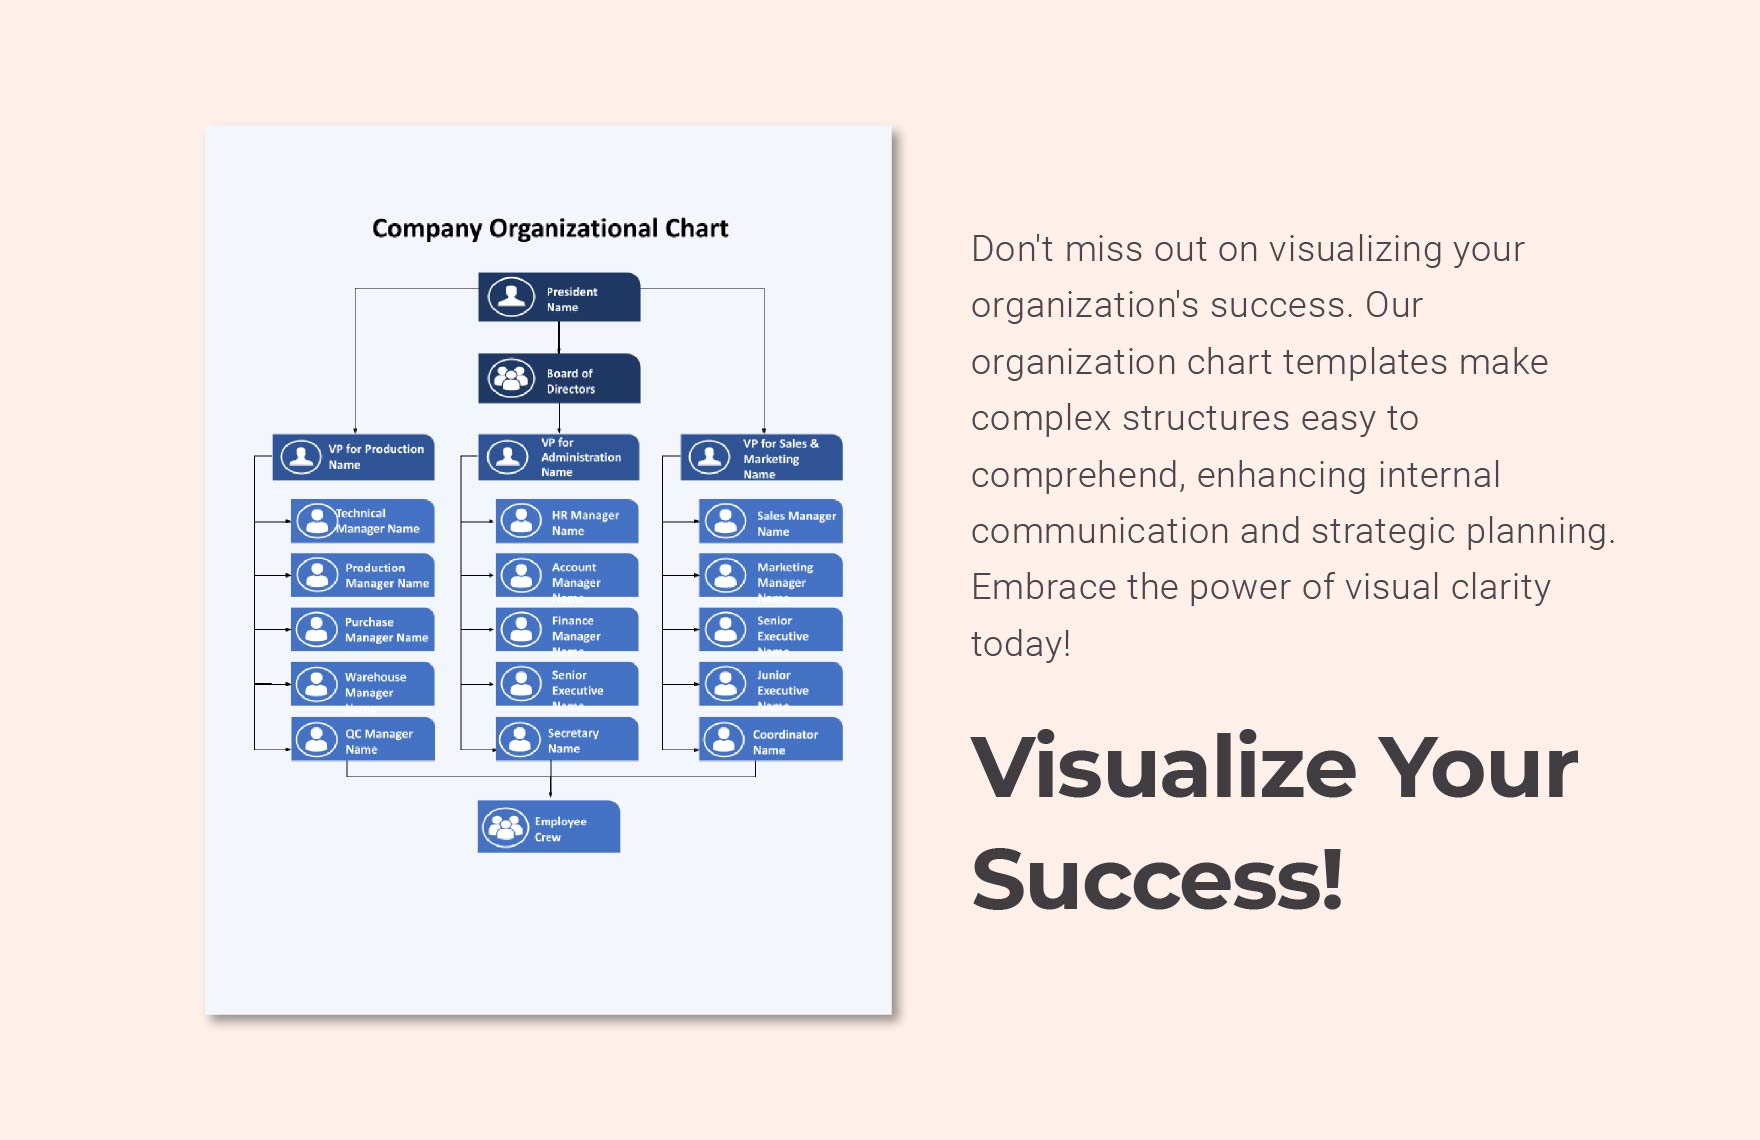 Company Organizational Chart Template